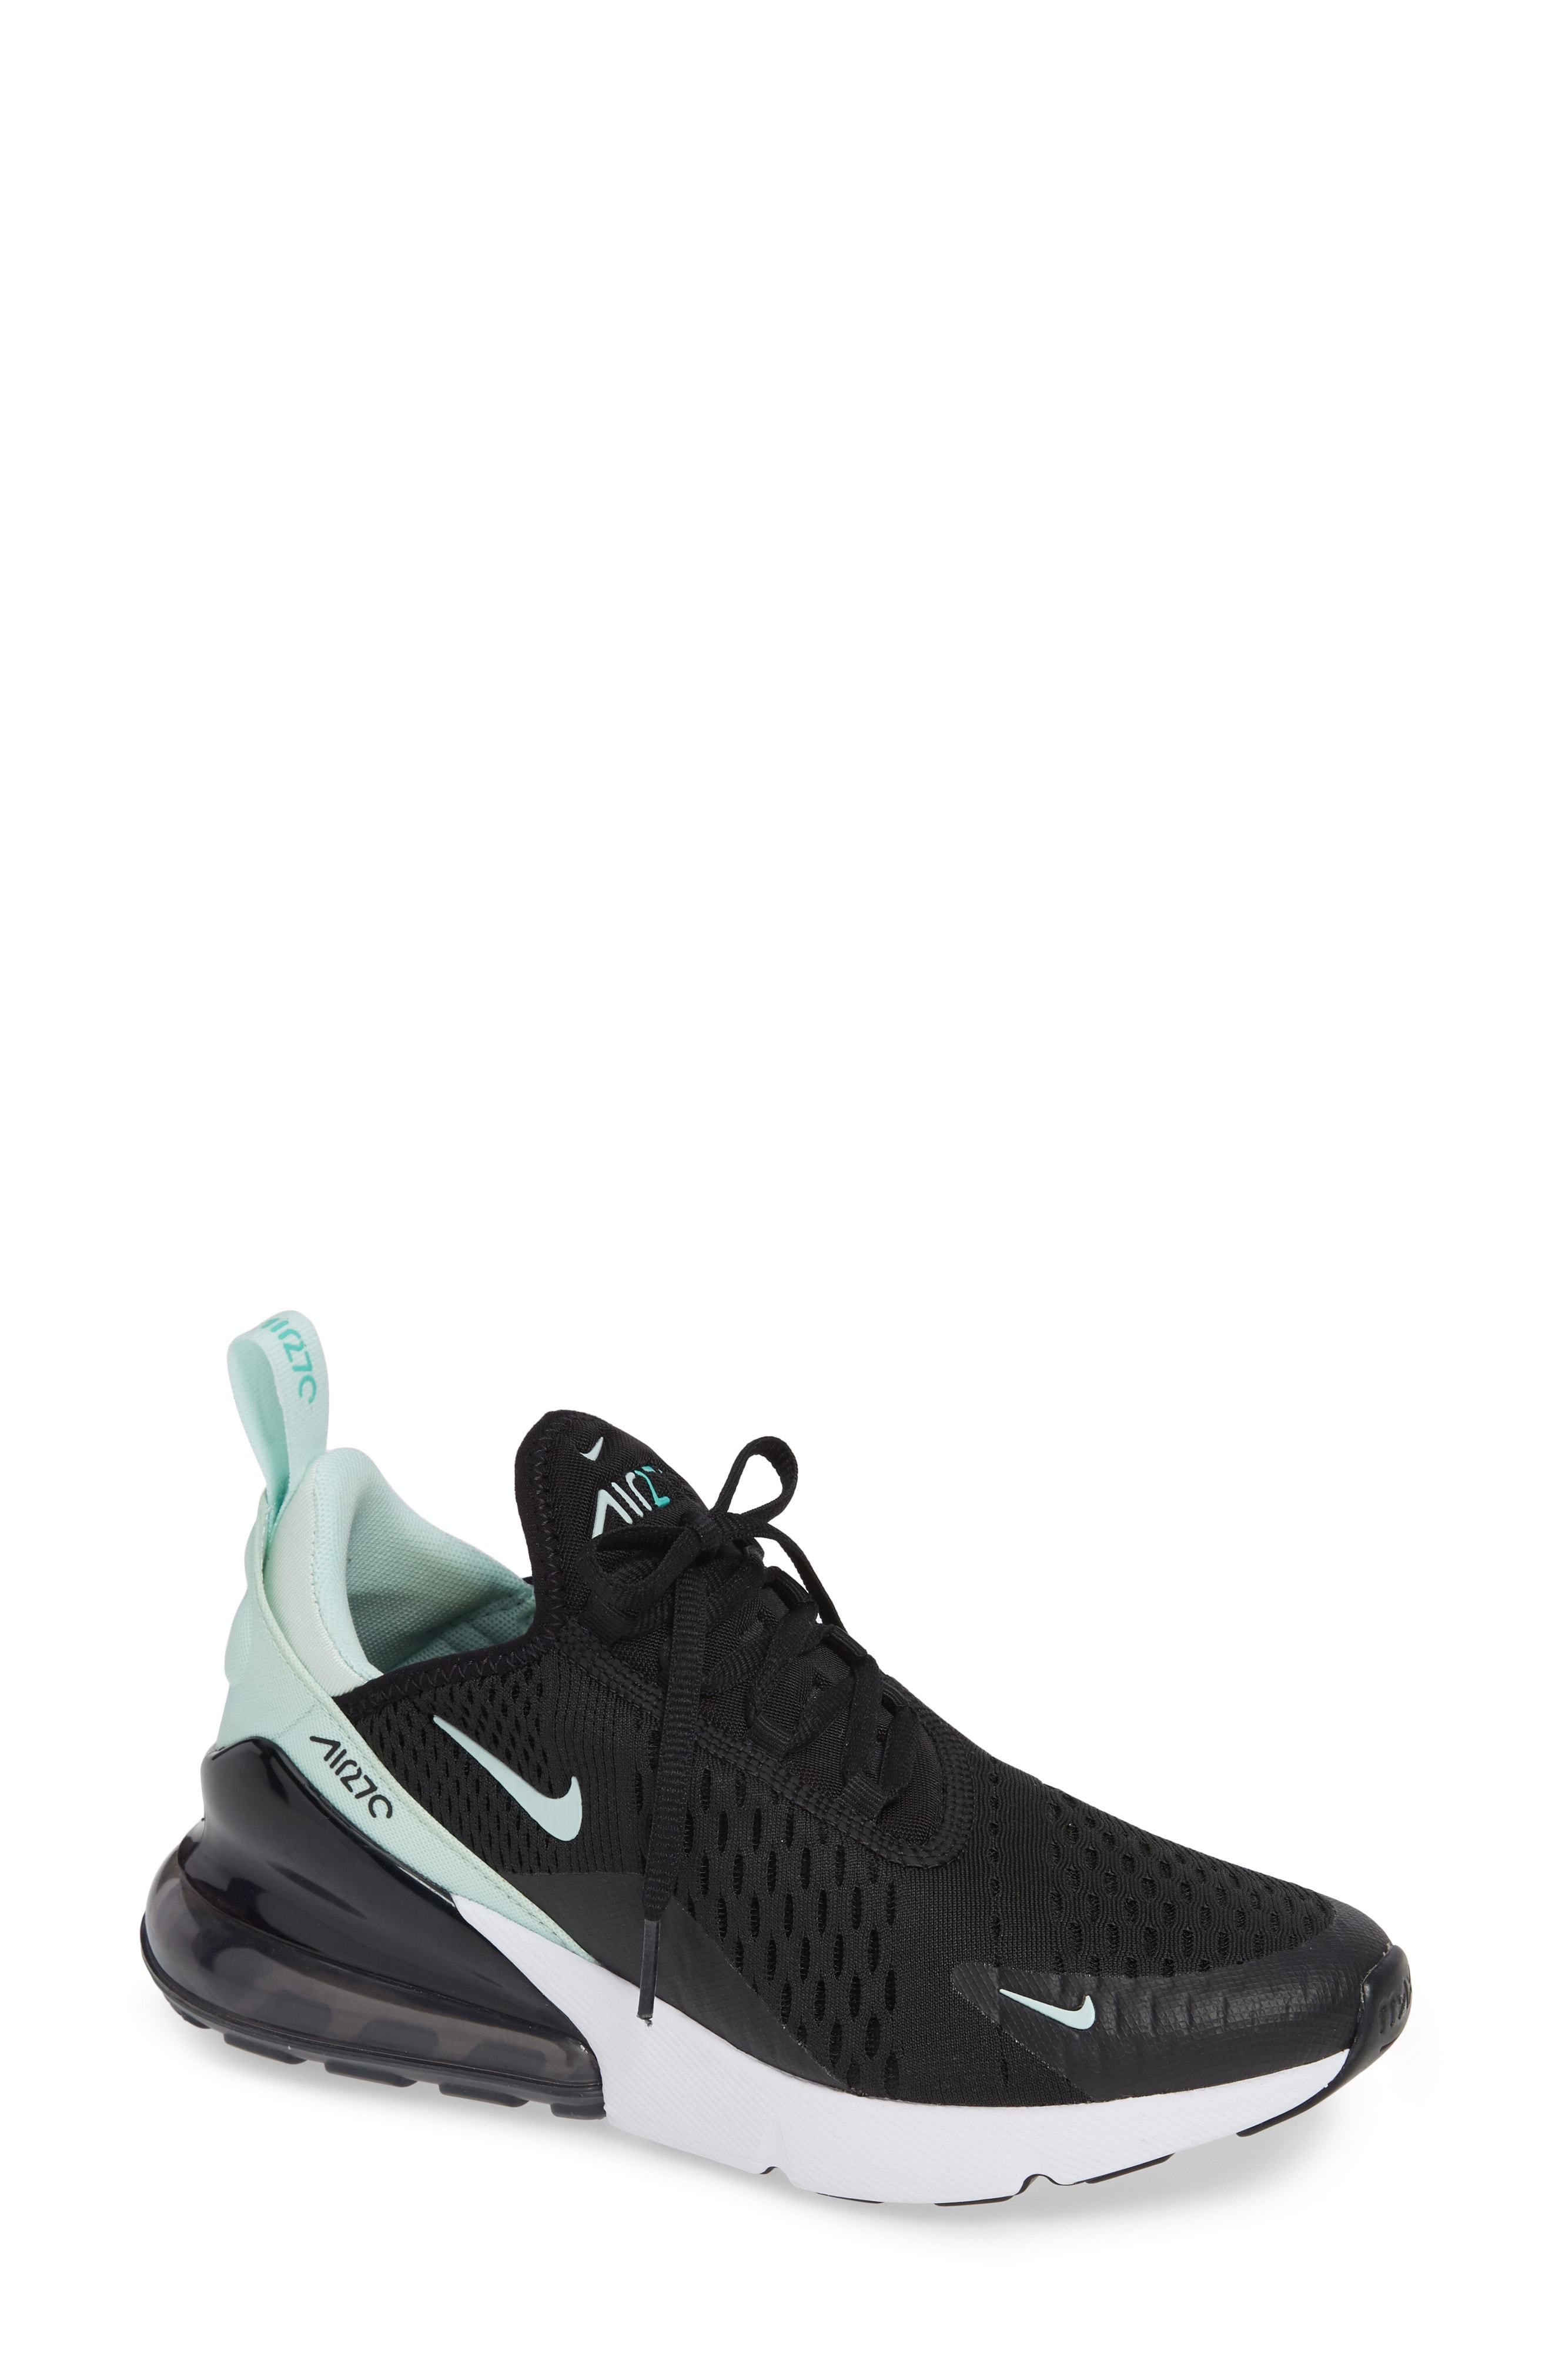 Nike Air Max 270 Premium Sneaker, $150 